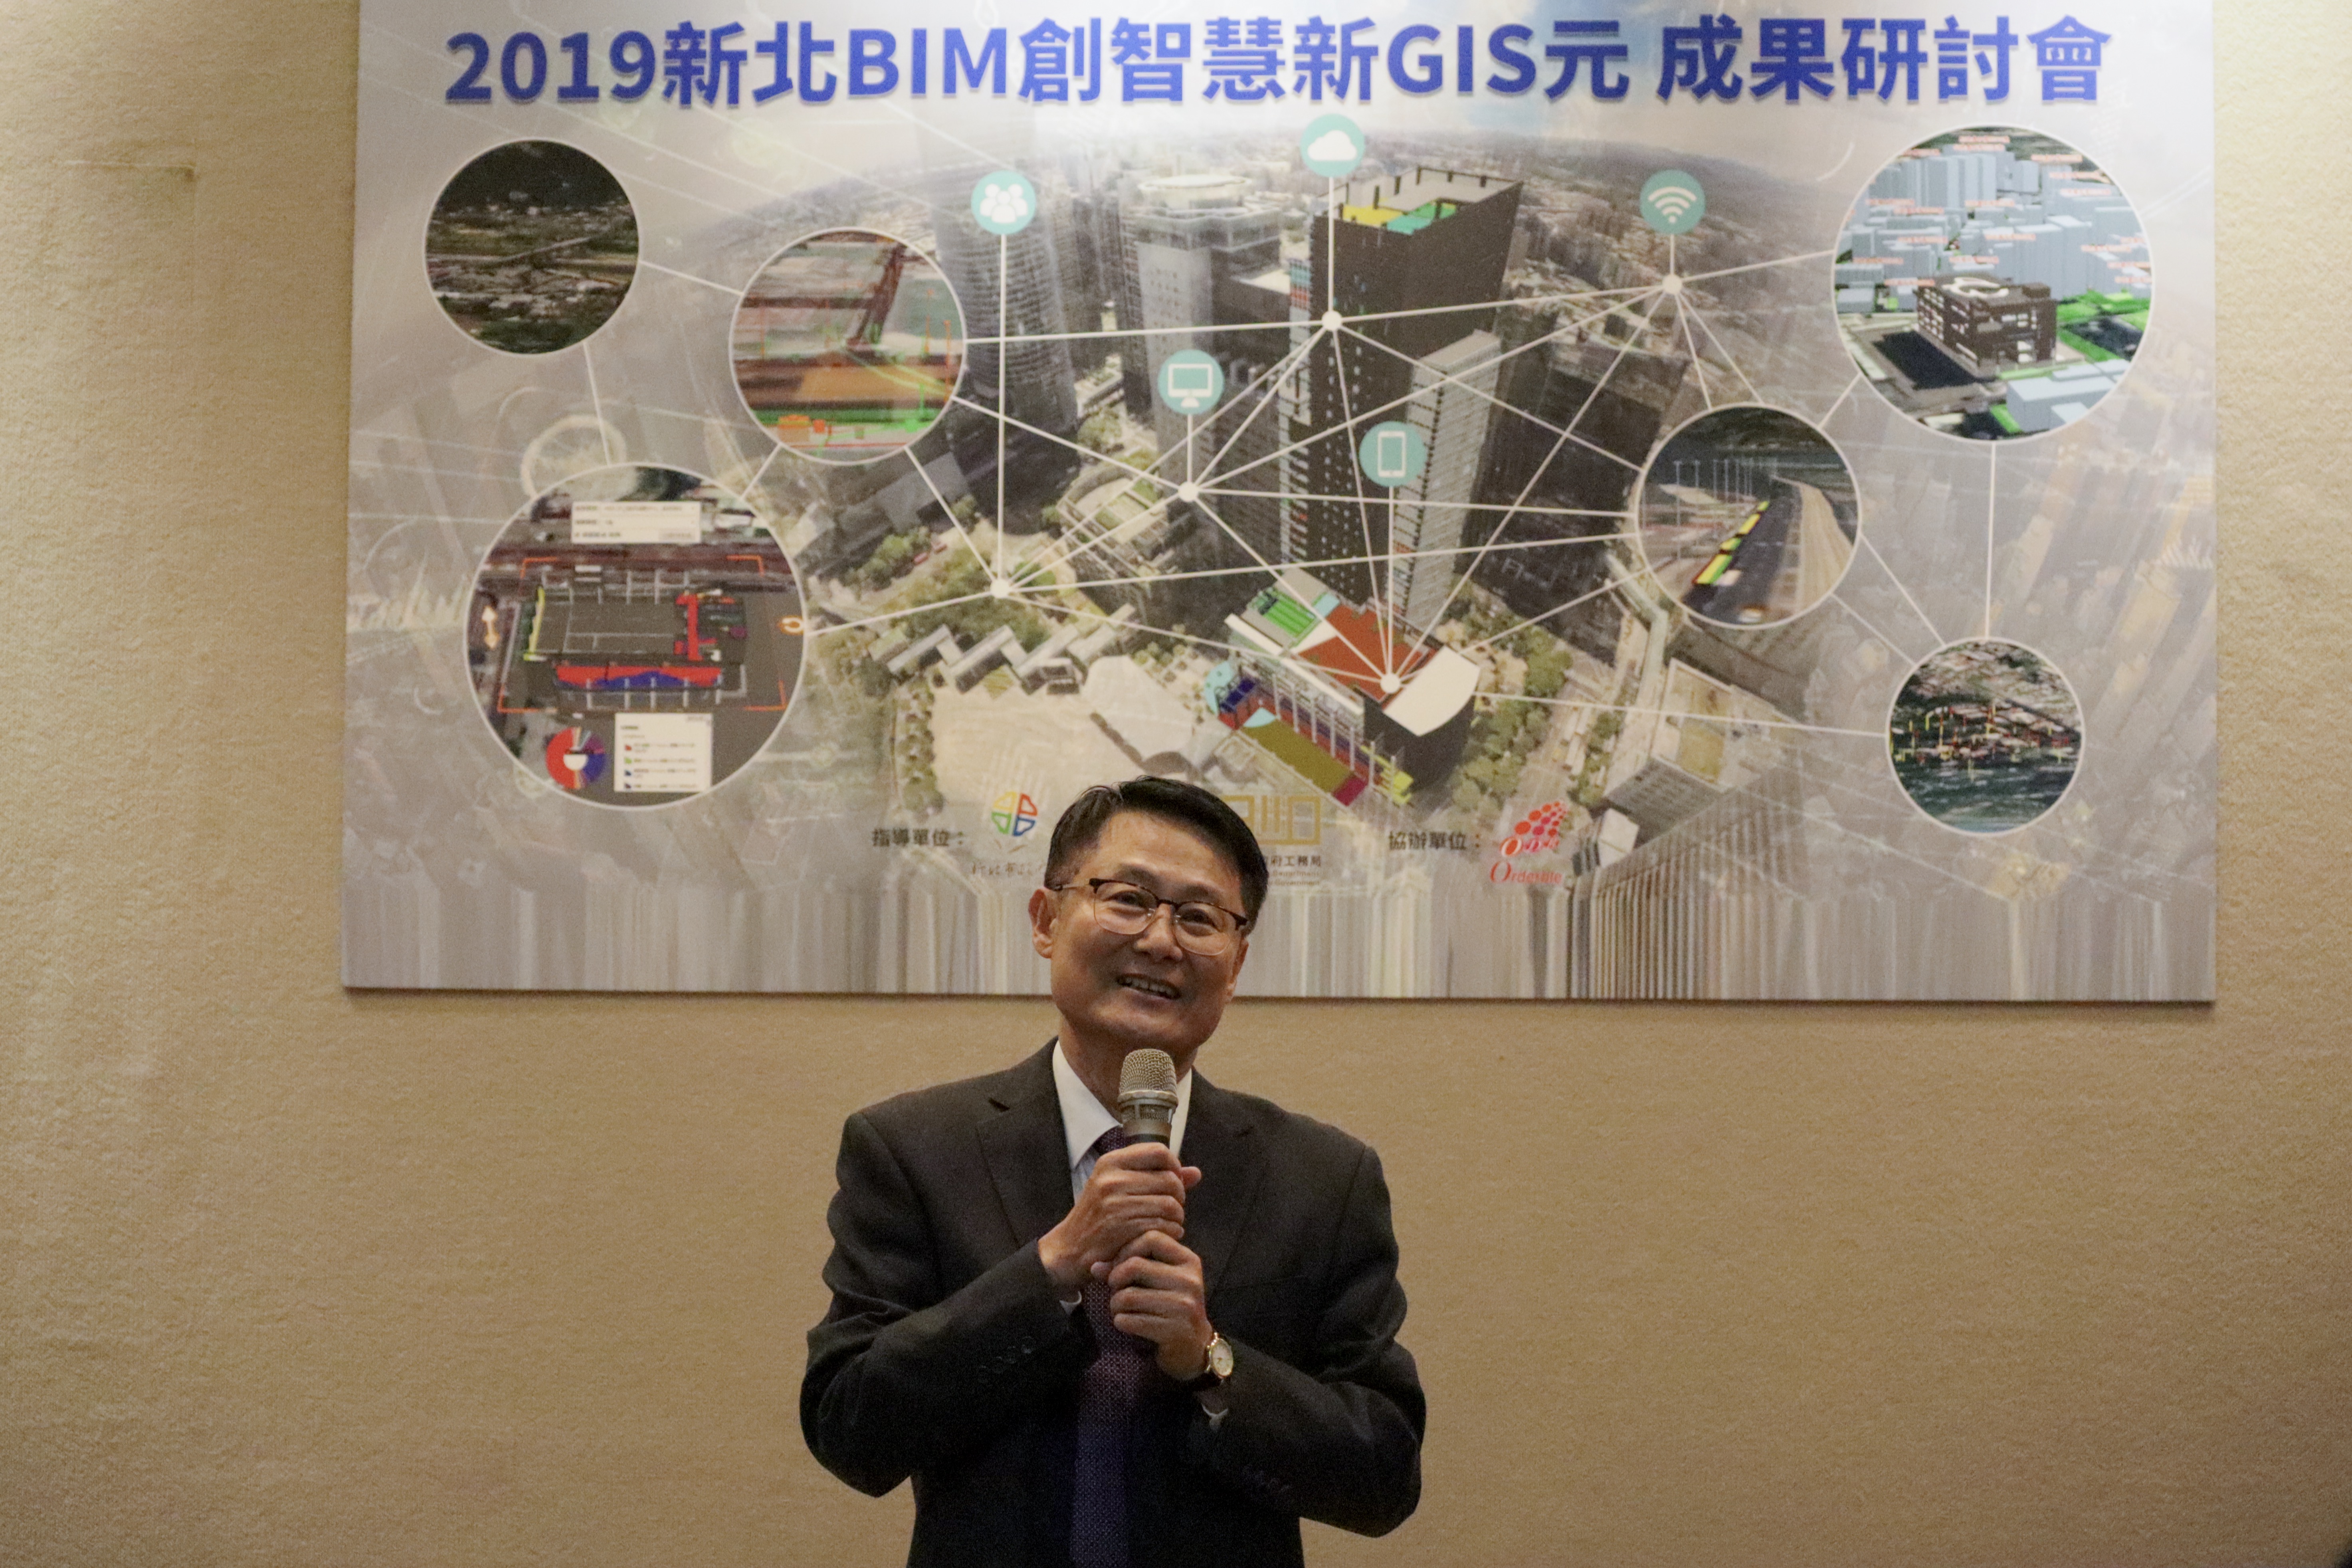 新北市副市長陳純敬主持「2019新北BIM創智慧新GIS元」成果研討會